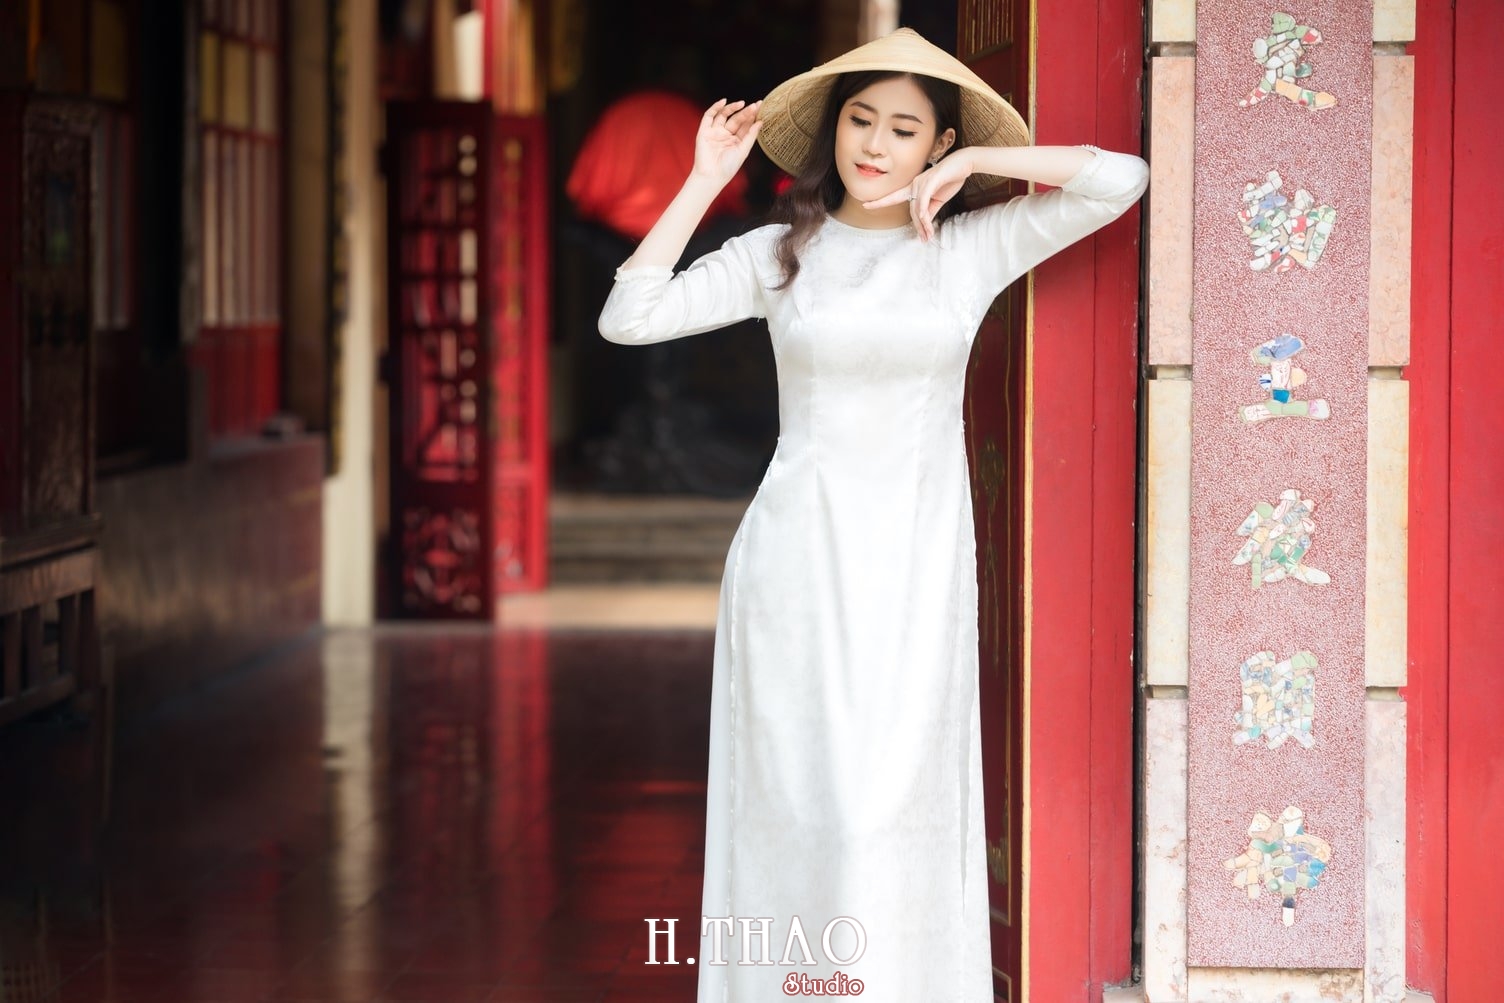 Ao dai lang ong ba chieu 1 1 - 49 cách tạo dáng chụp ảnh với áo dài tuyệt đẹp - HThao Studio